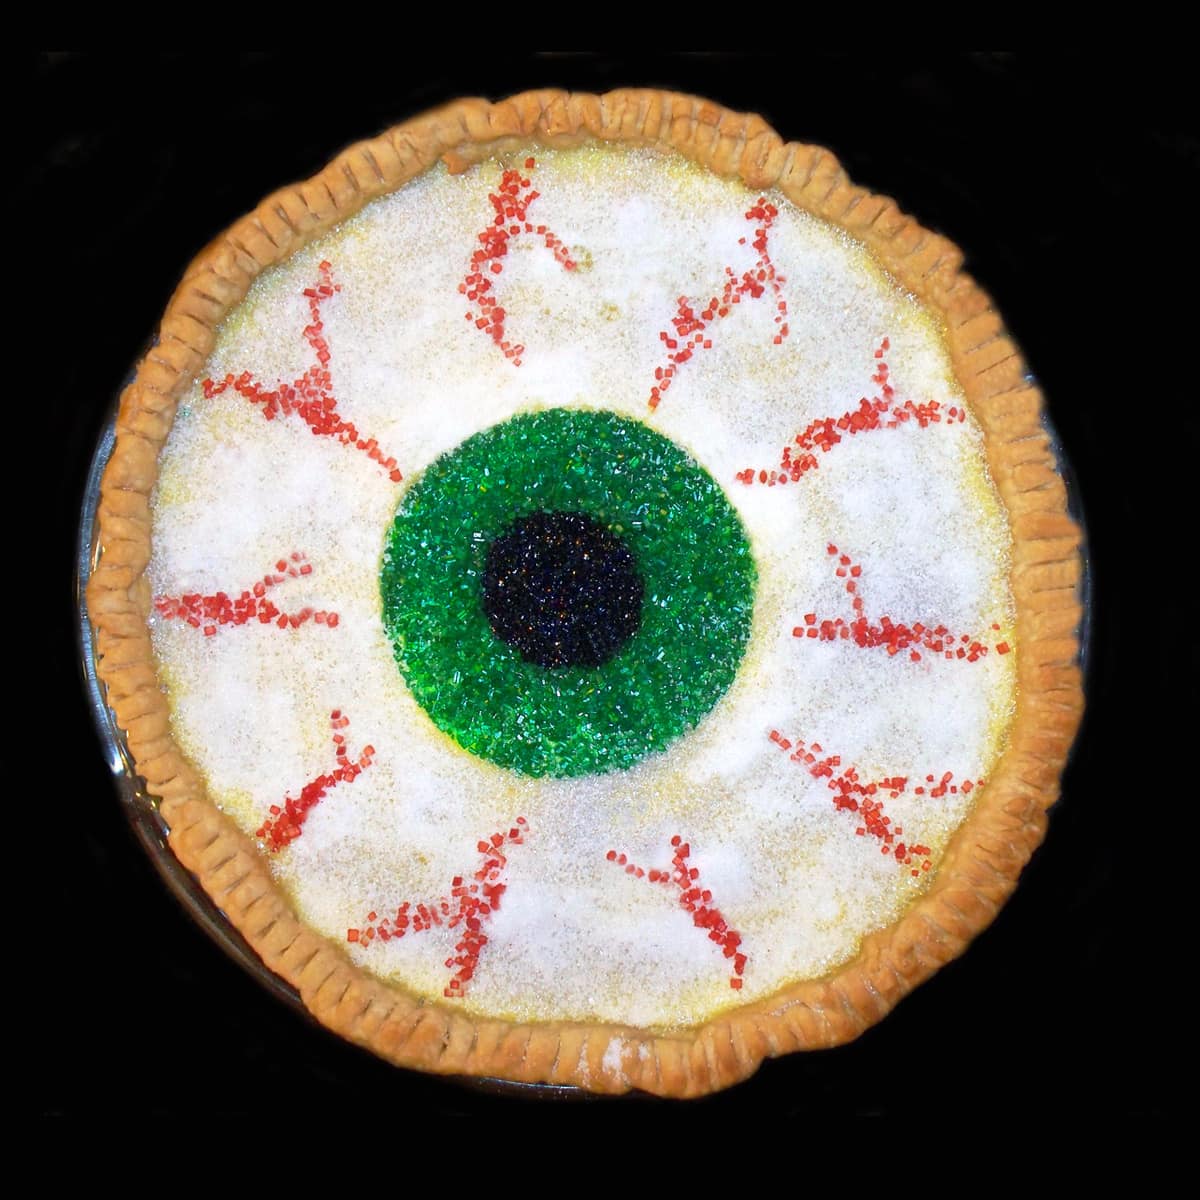 eyeball pie made with a crème brûlée pie.